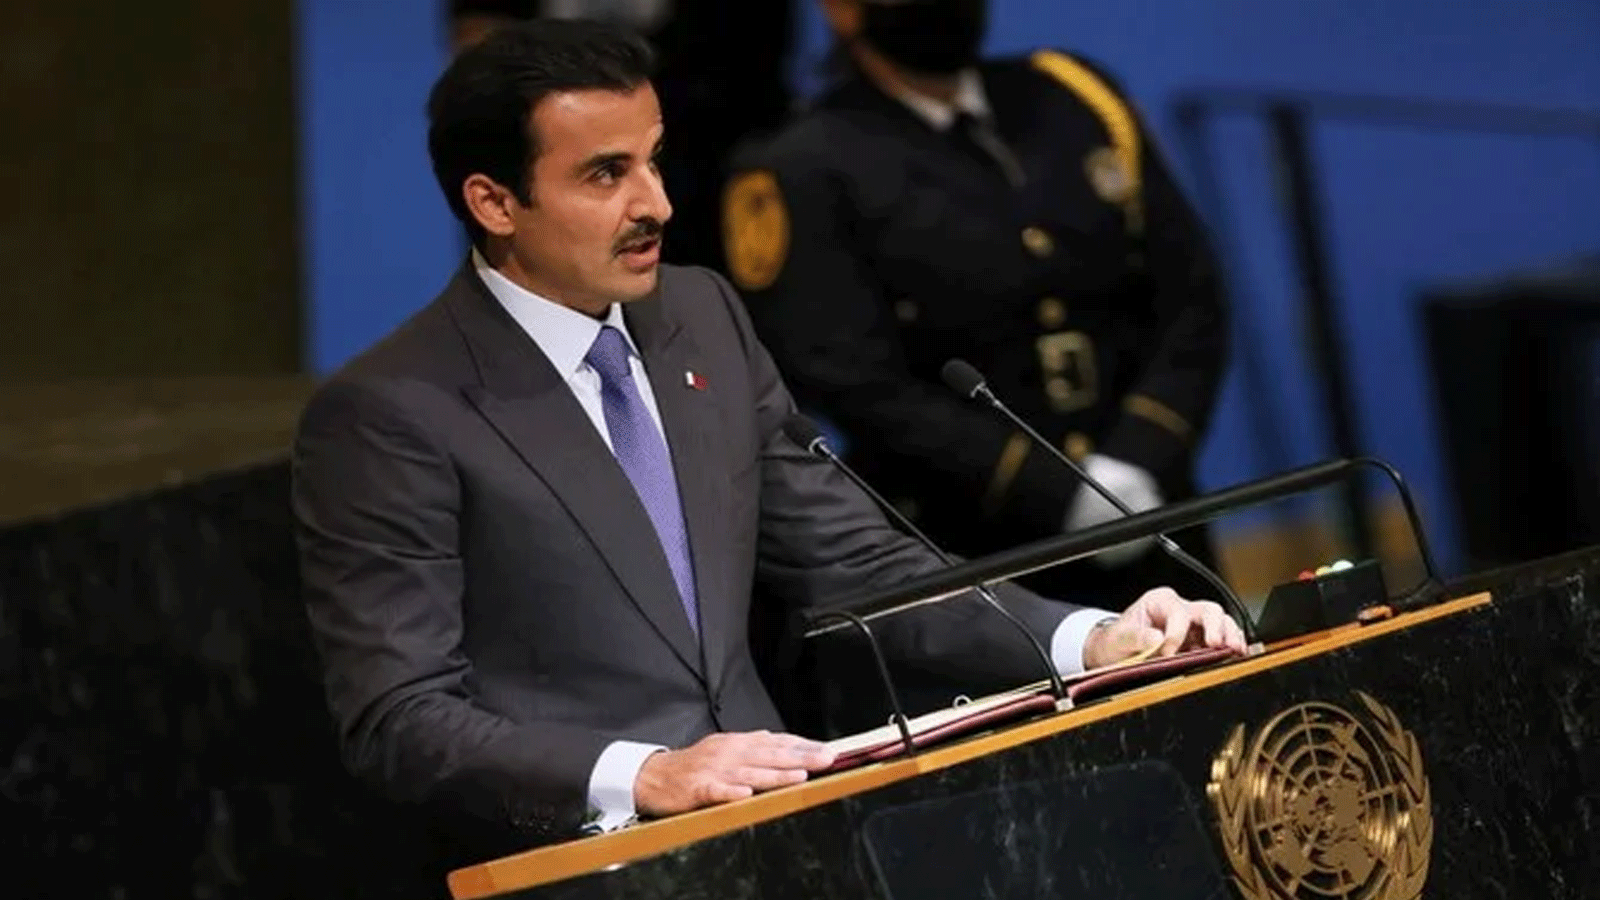 أمير قطر الشيخ تميم بن حمد آل ثاني يلقي كلمة في الدورة السابعة والسبعين للجمعية العامة للأمم المتحدة في نيويورك.